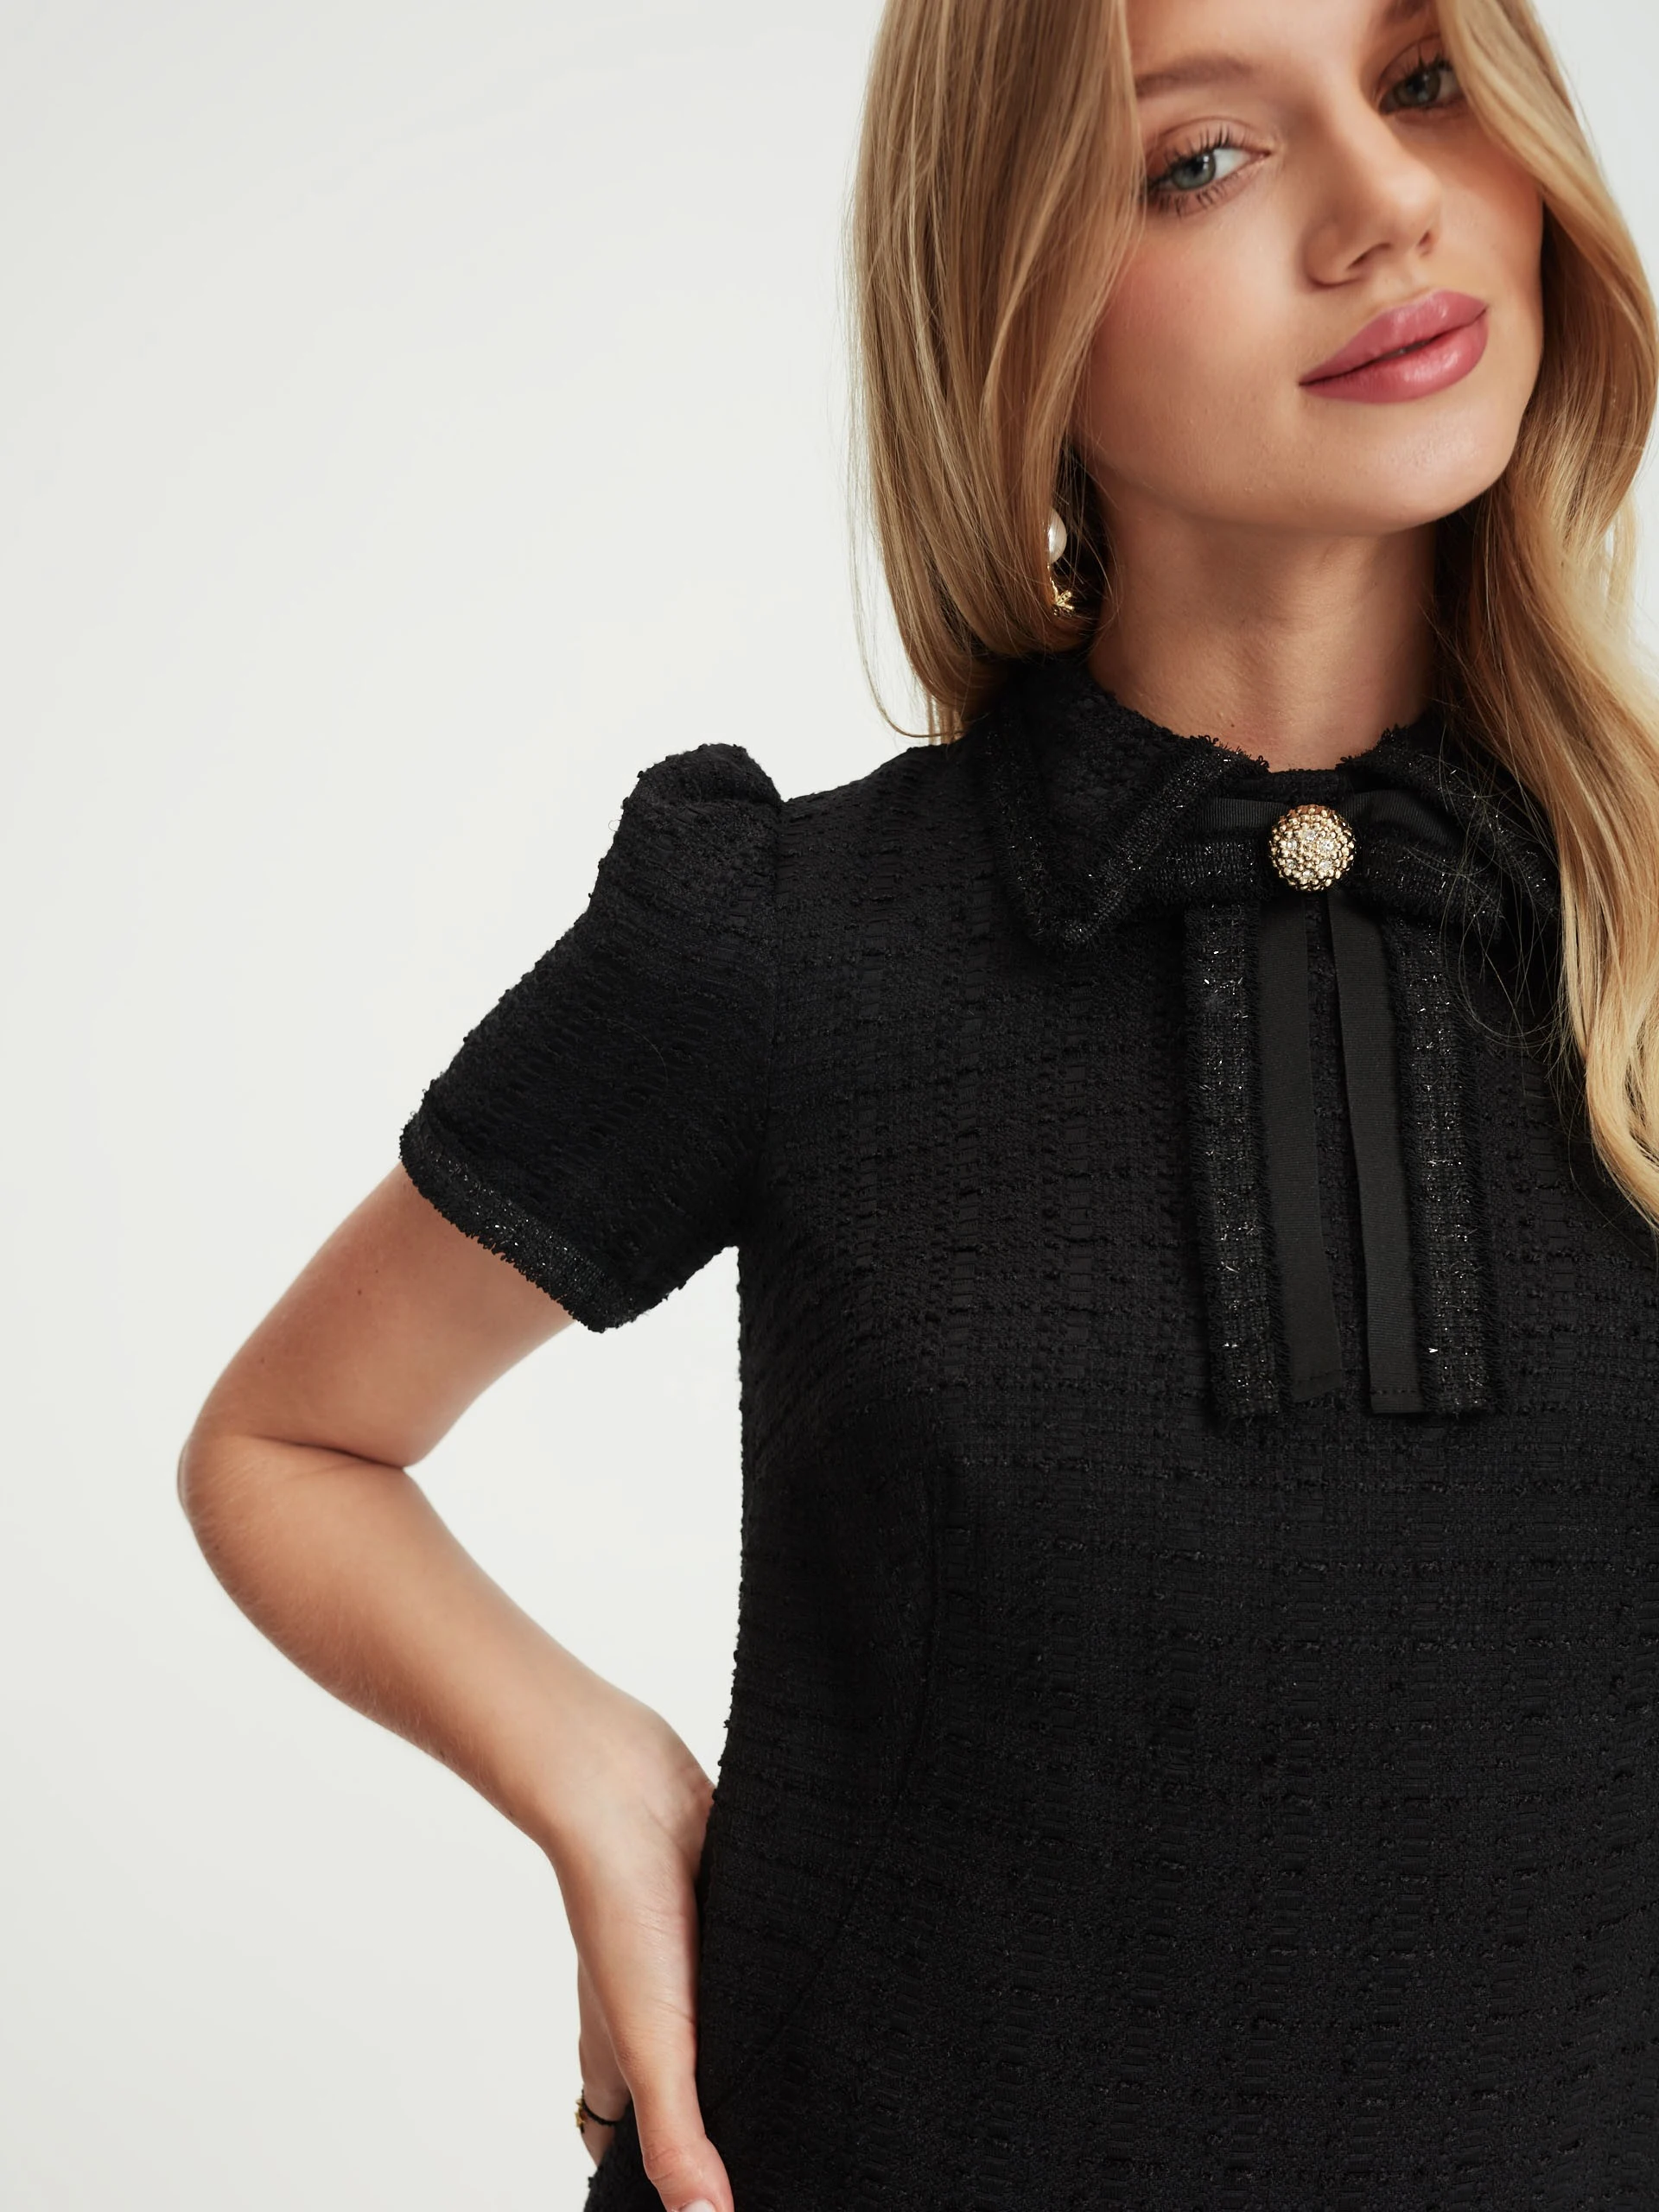 Black tweed dress with short sleeves